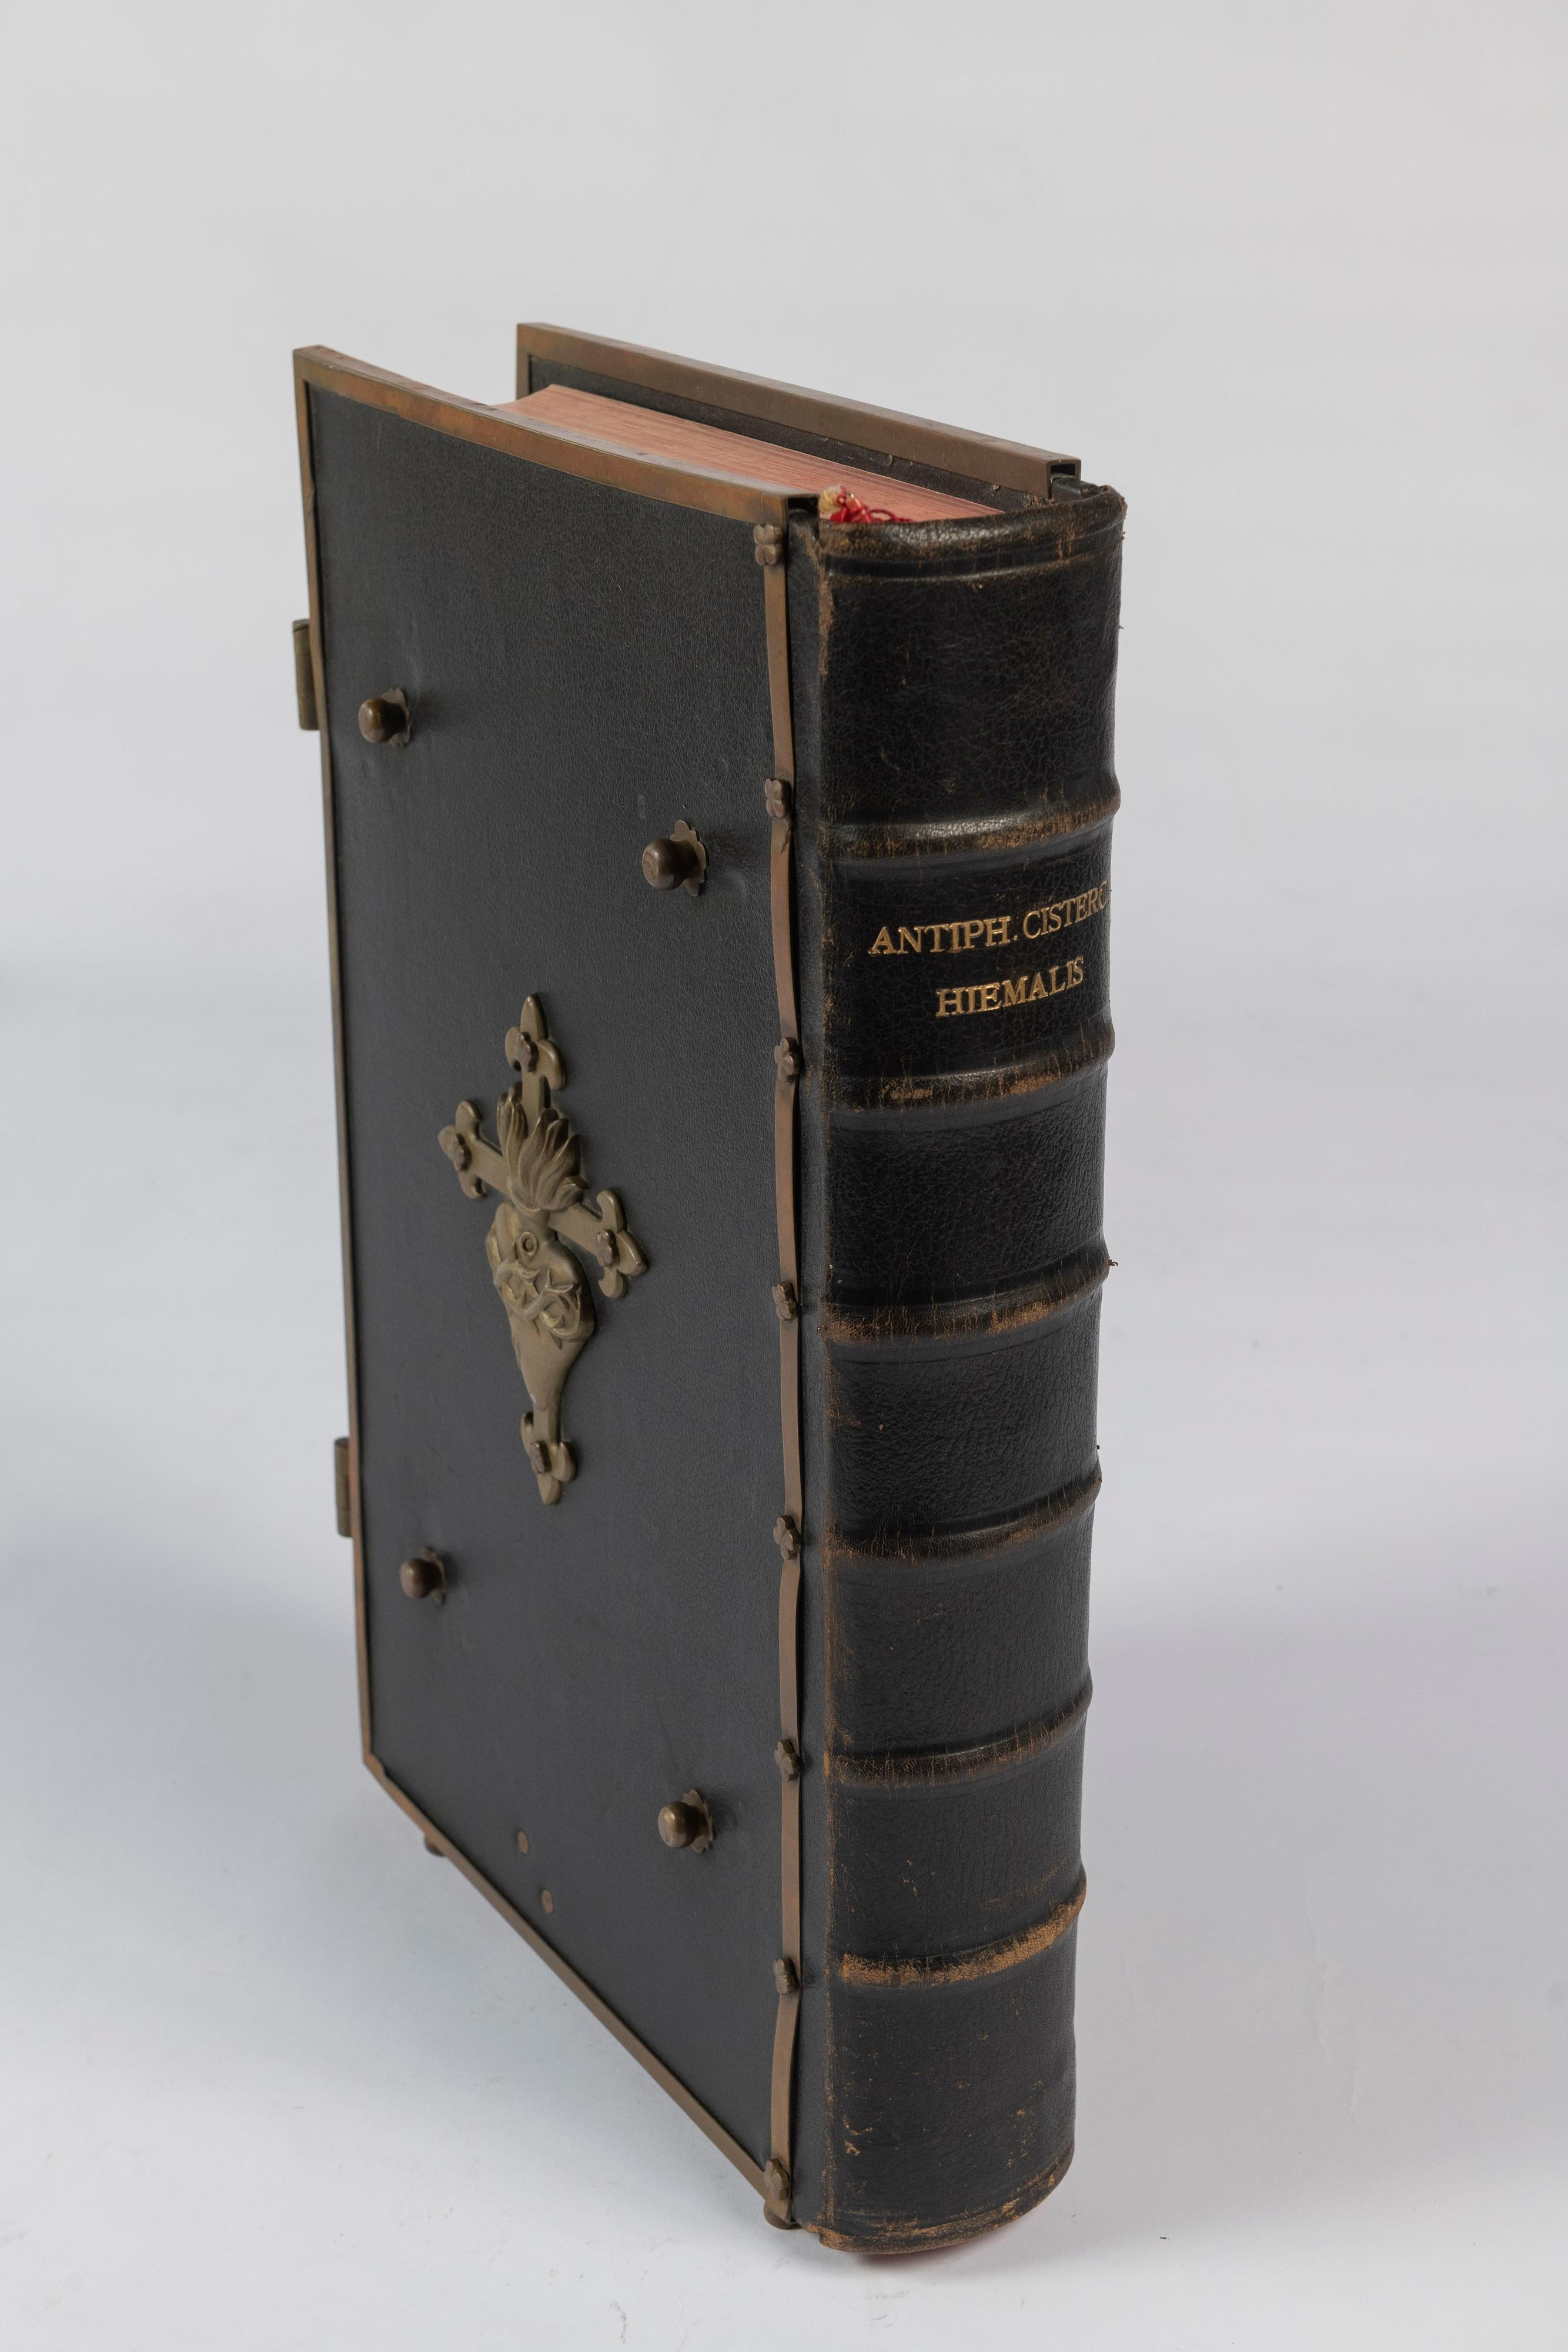 Belgian Antique Antiphonarium Cisterciense, Par Hiemalis, Choir Book for Winter, 1903 For Sale